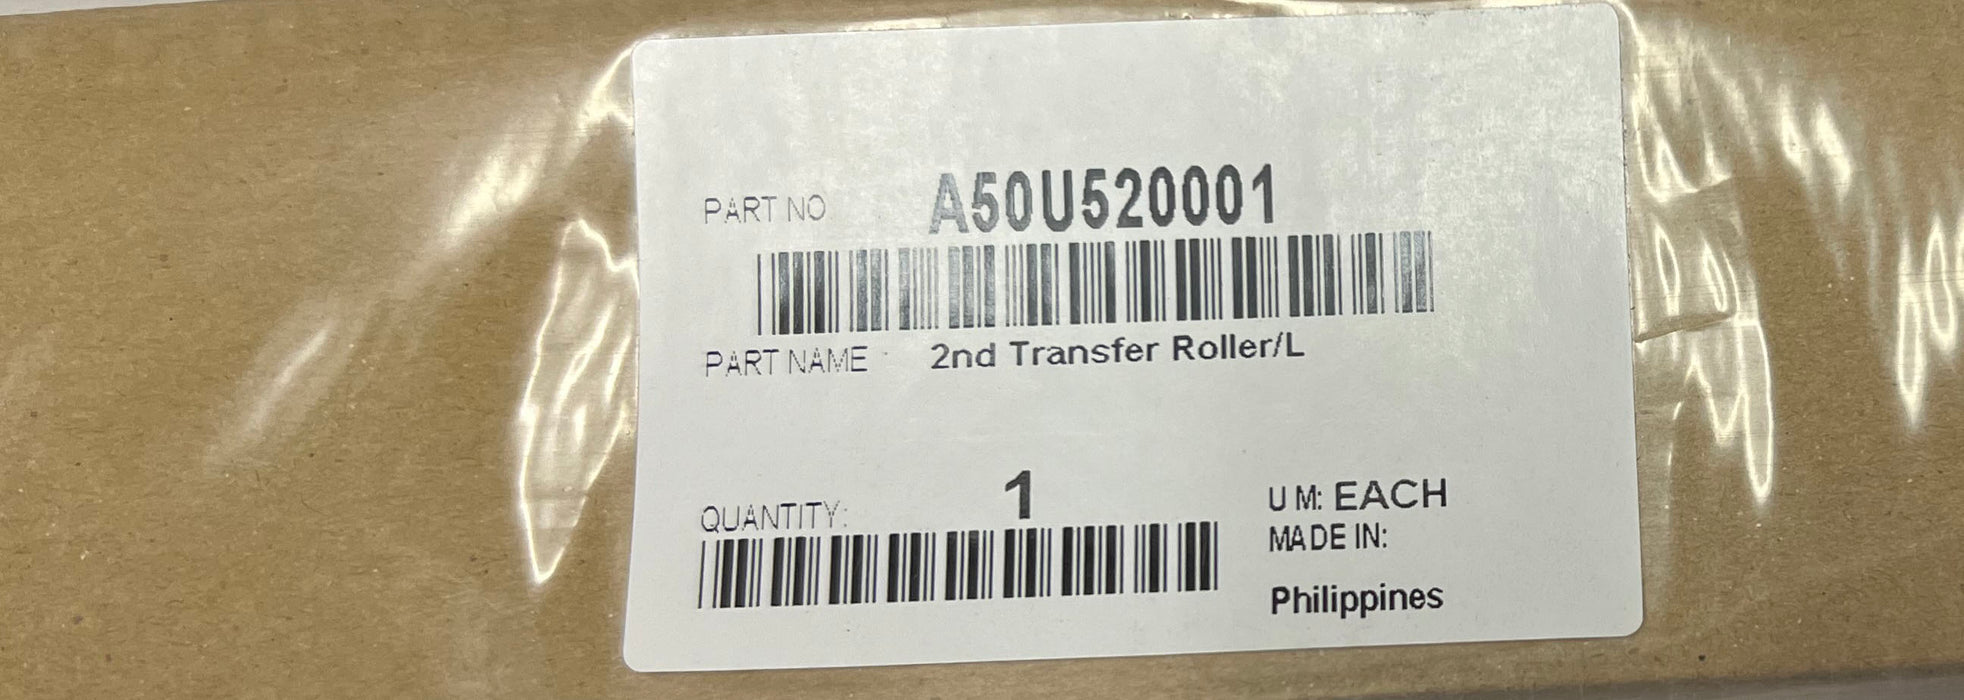 Konica Minolta 2nd Transfer Roller /L | A50U520001